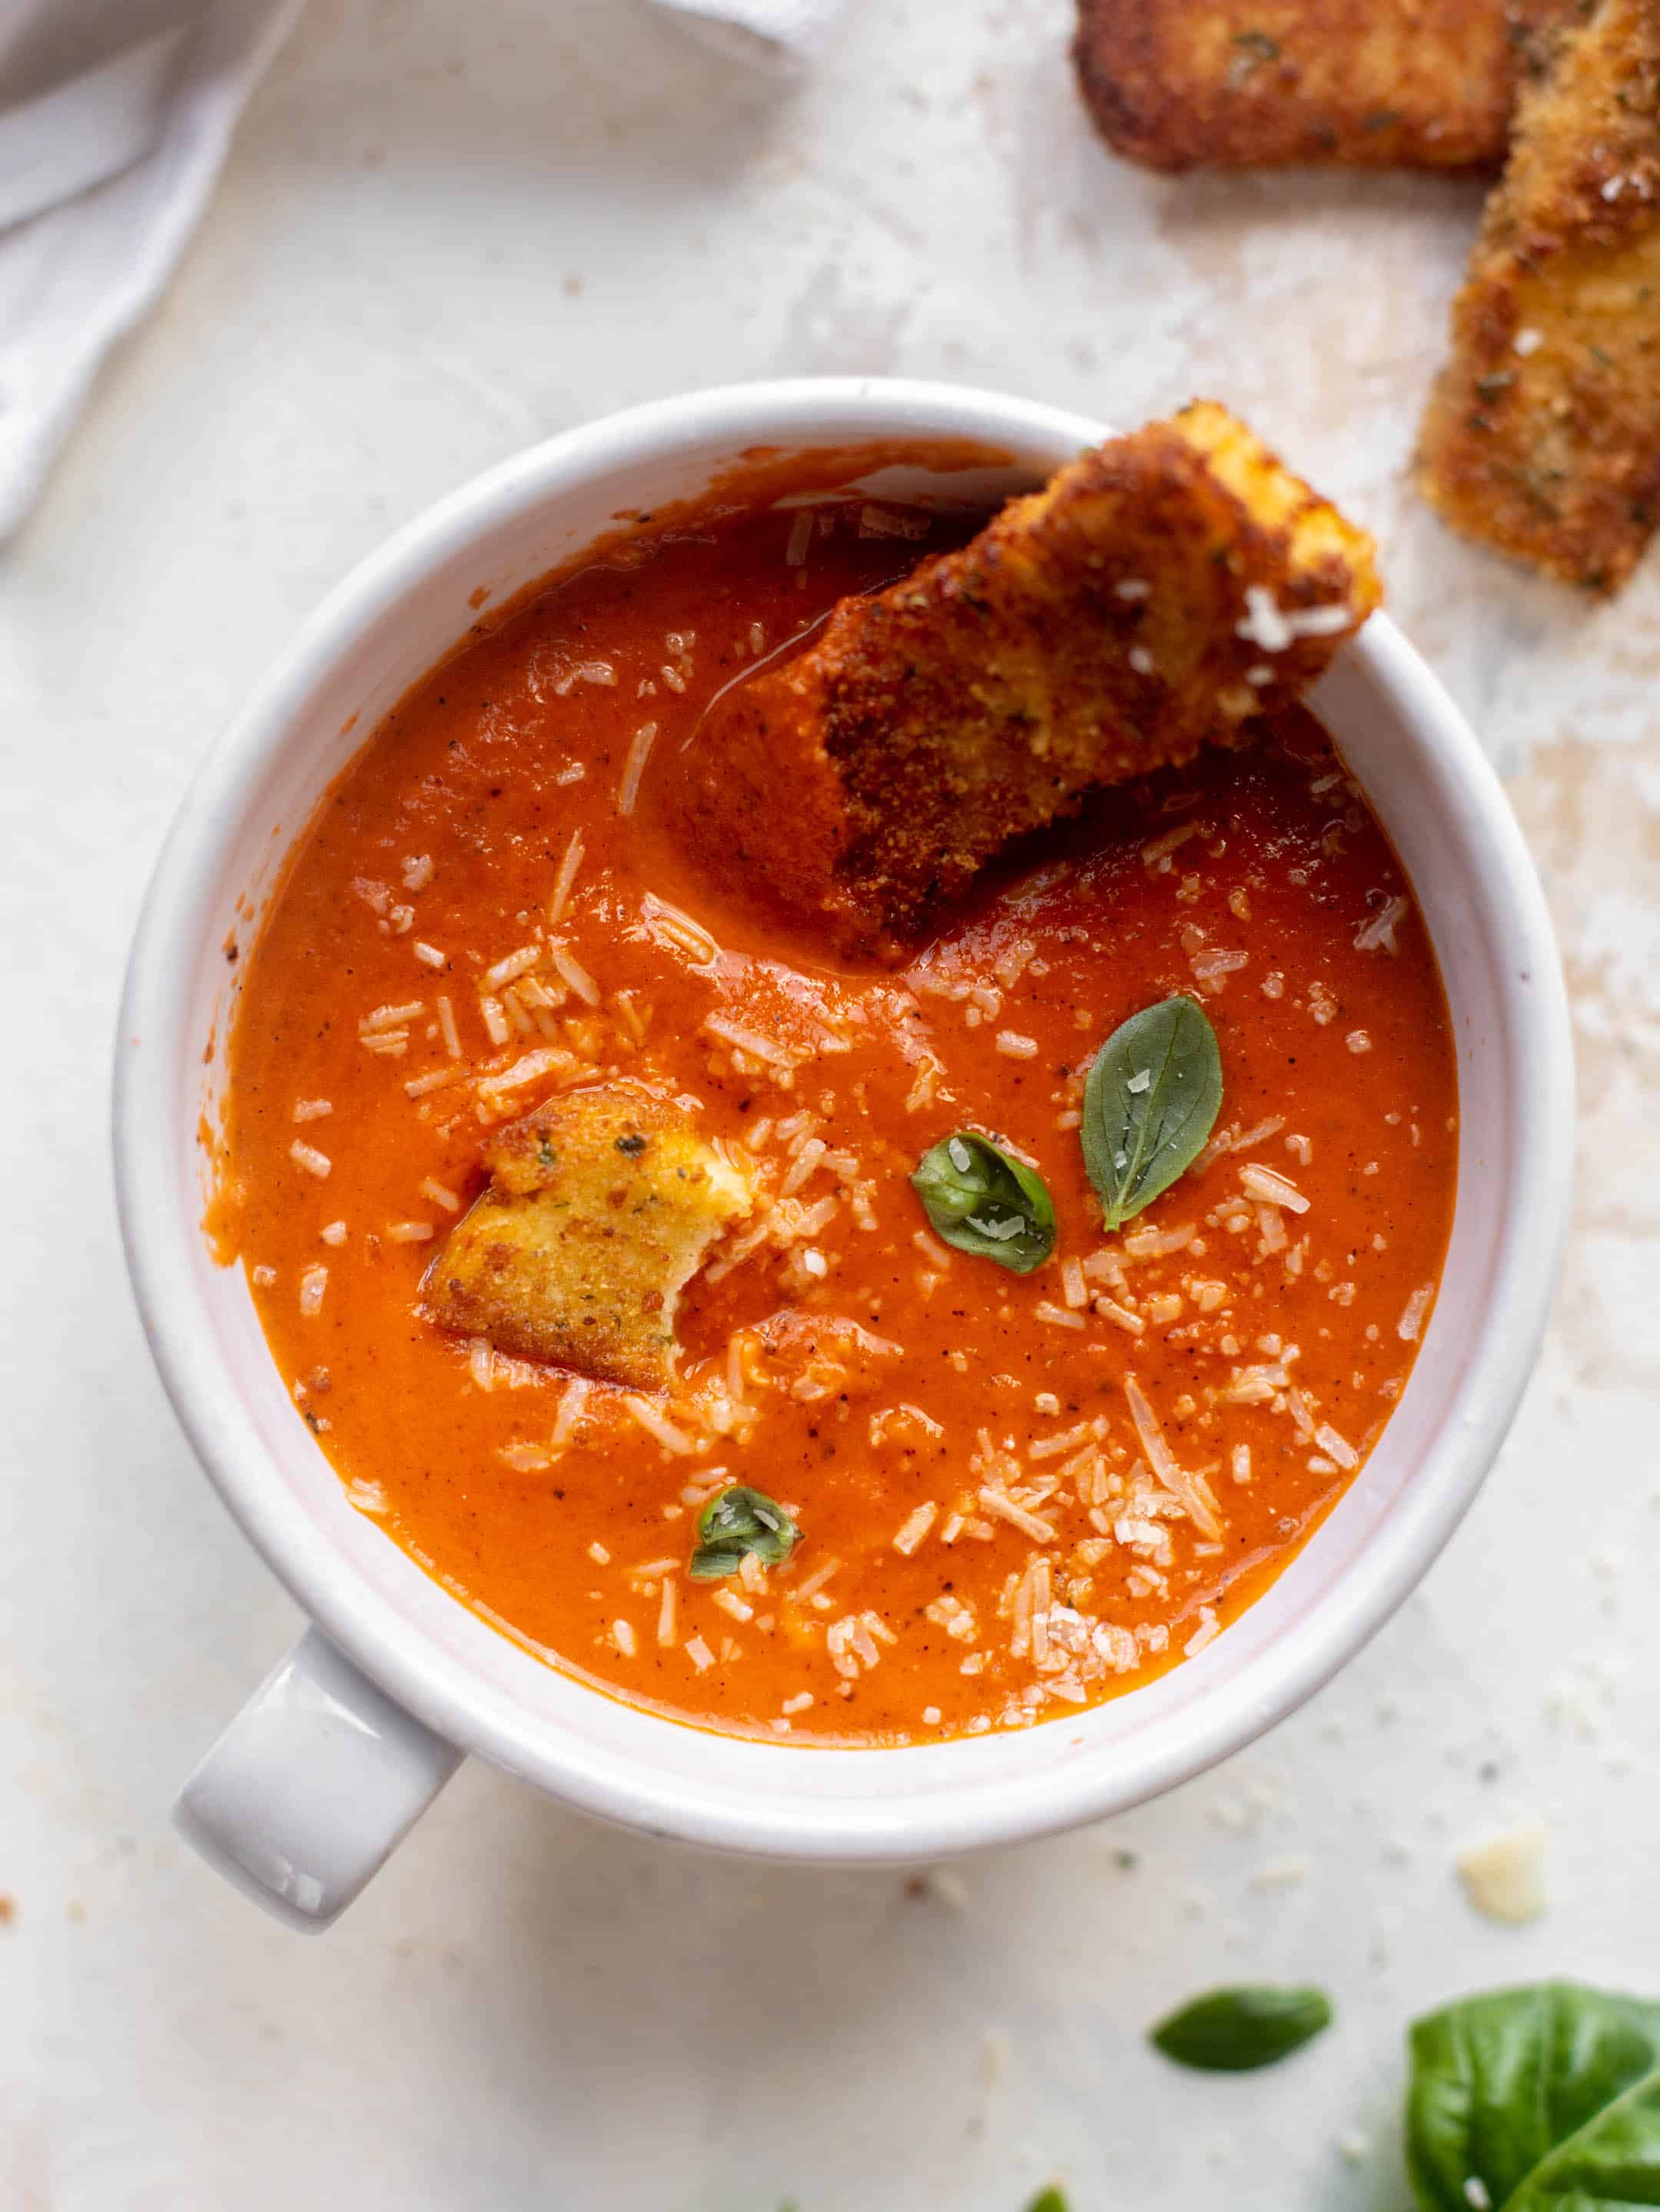 tomato soup with halloumi cheese sticks